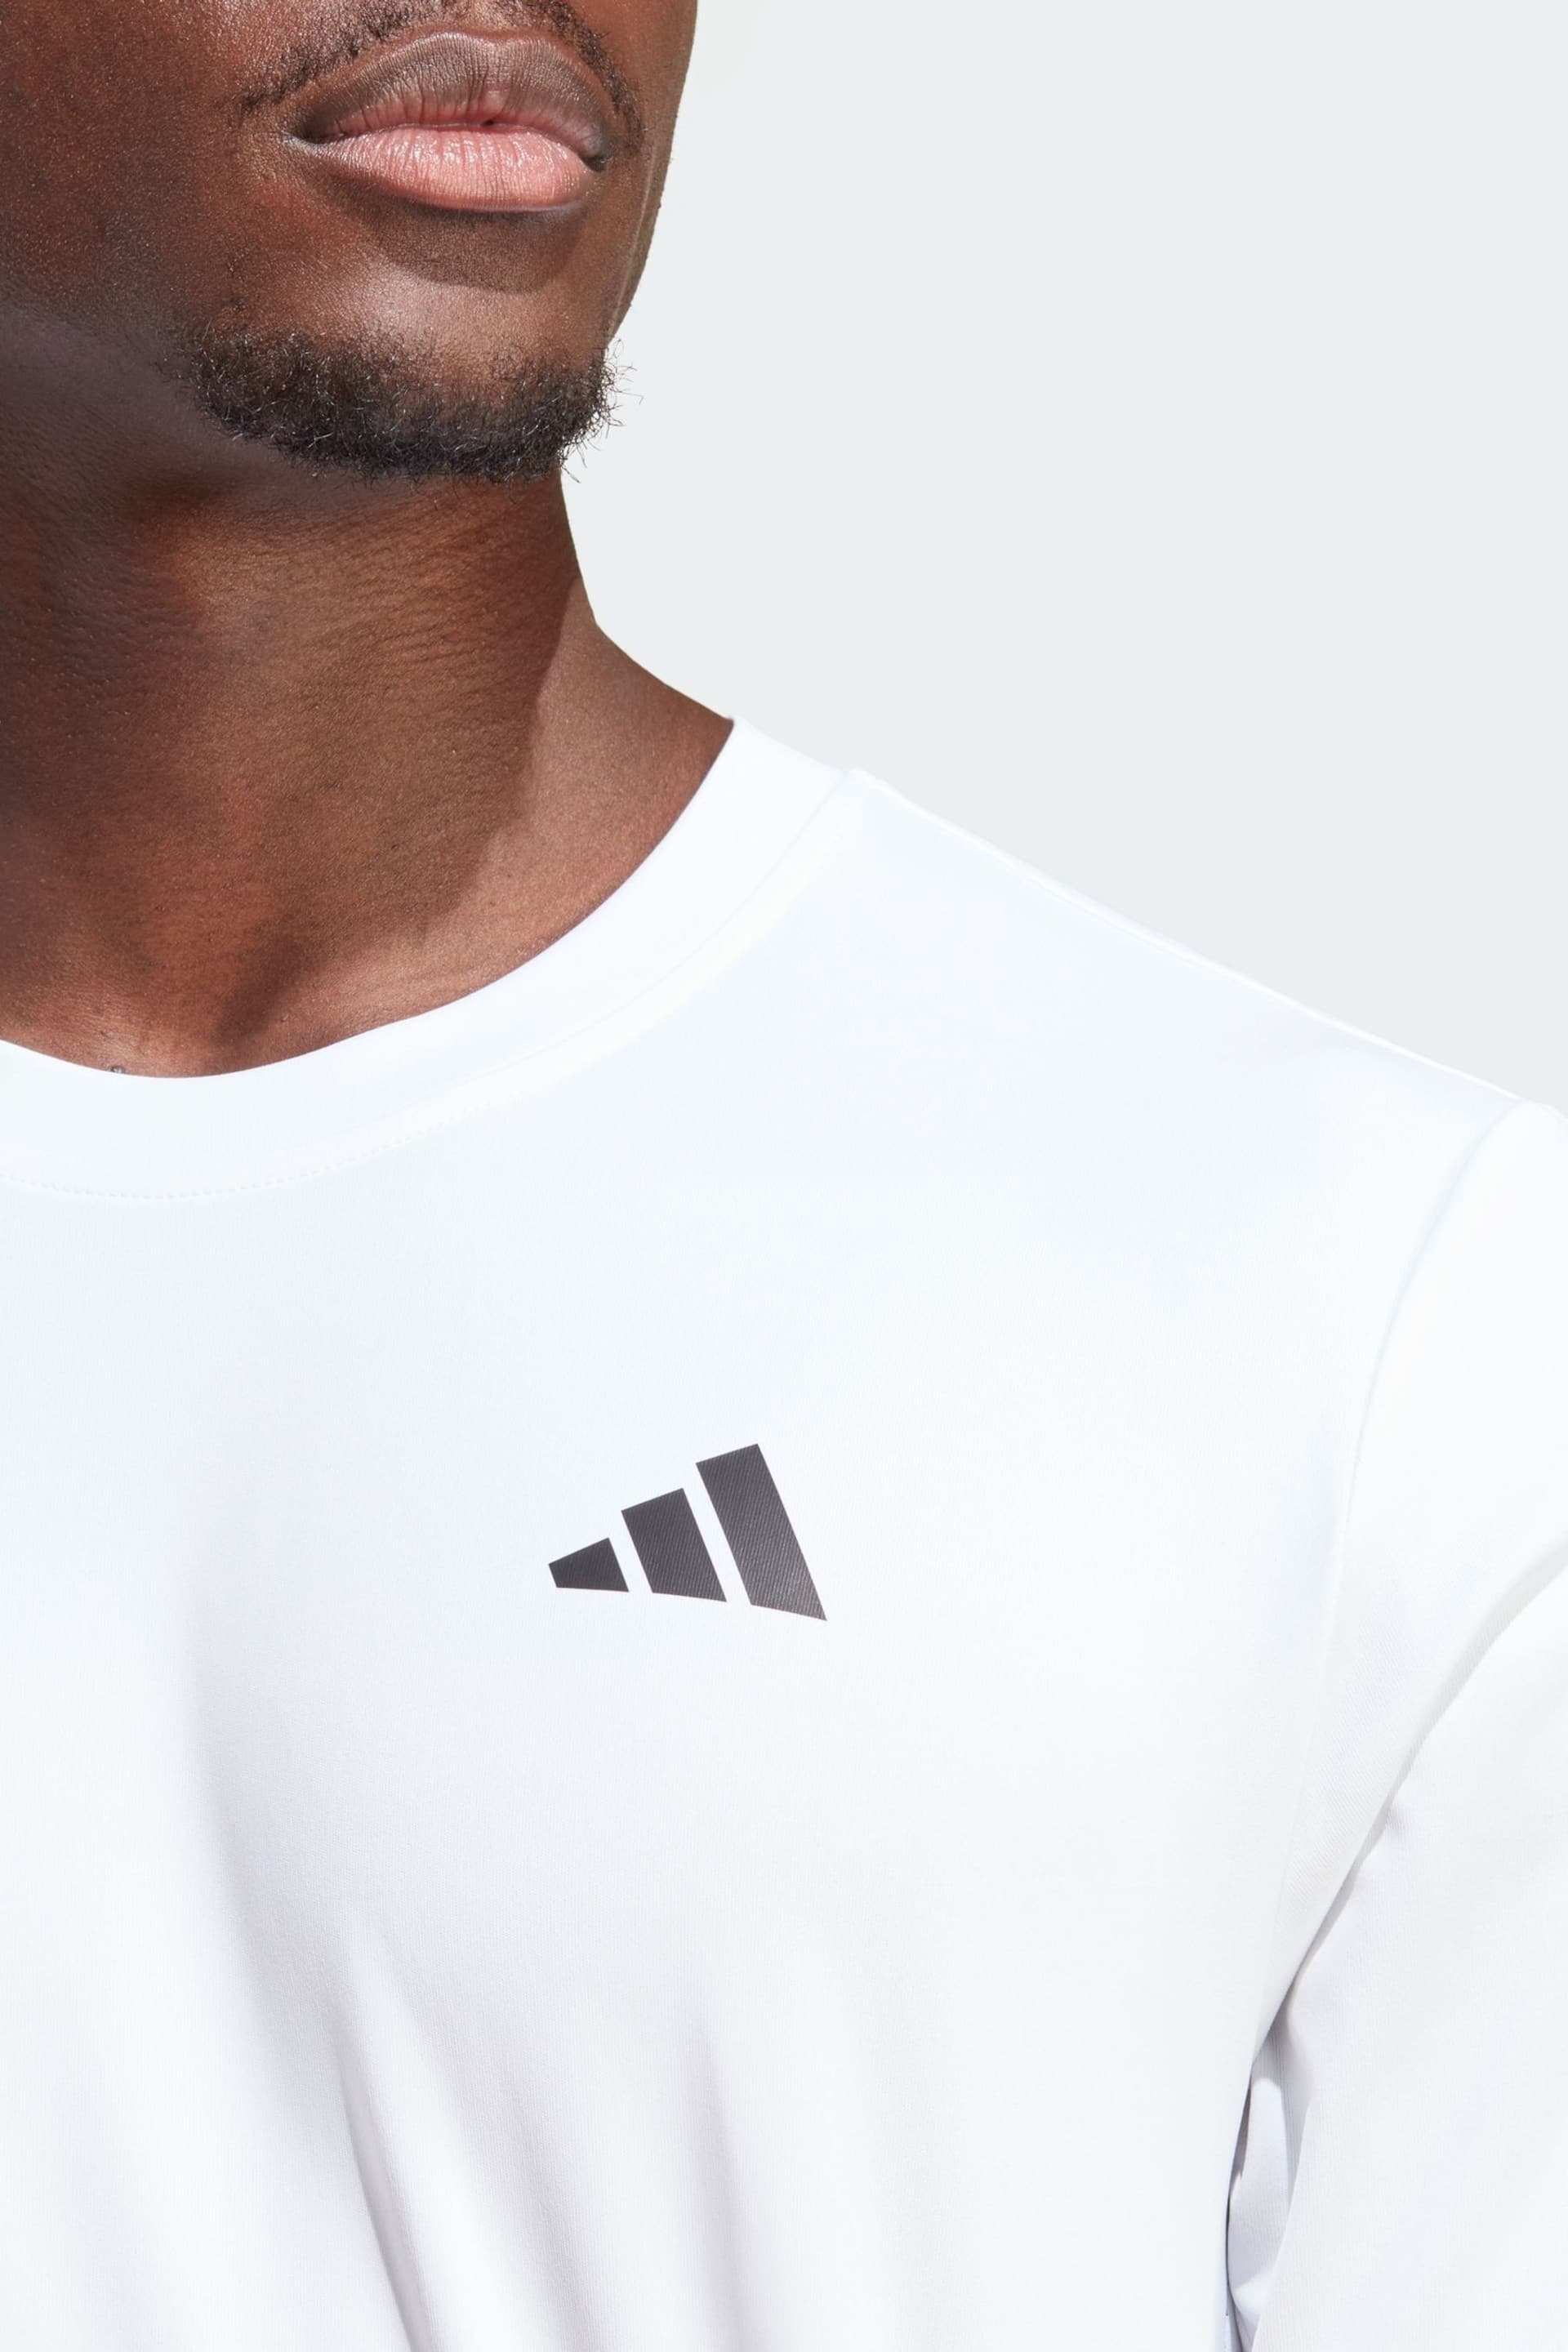 adidas White Club 3-Stripes Tennis T-Shirt - Image 4 of 6